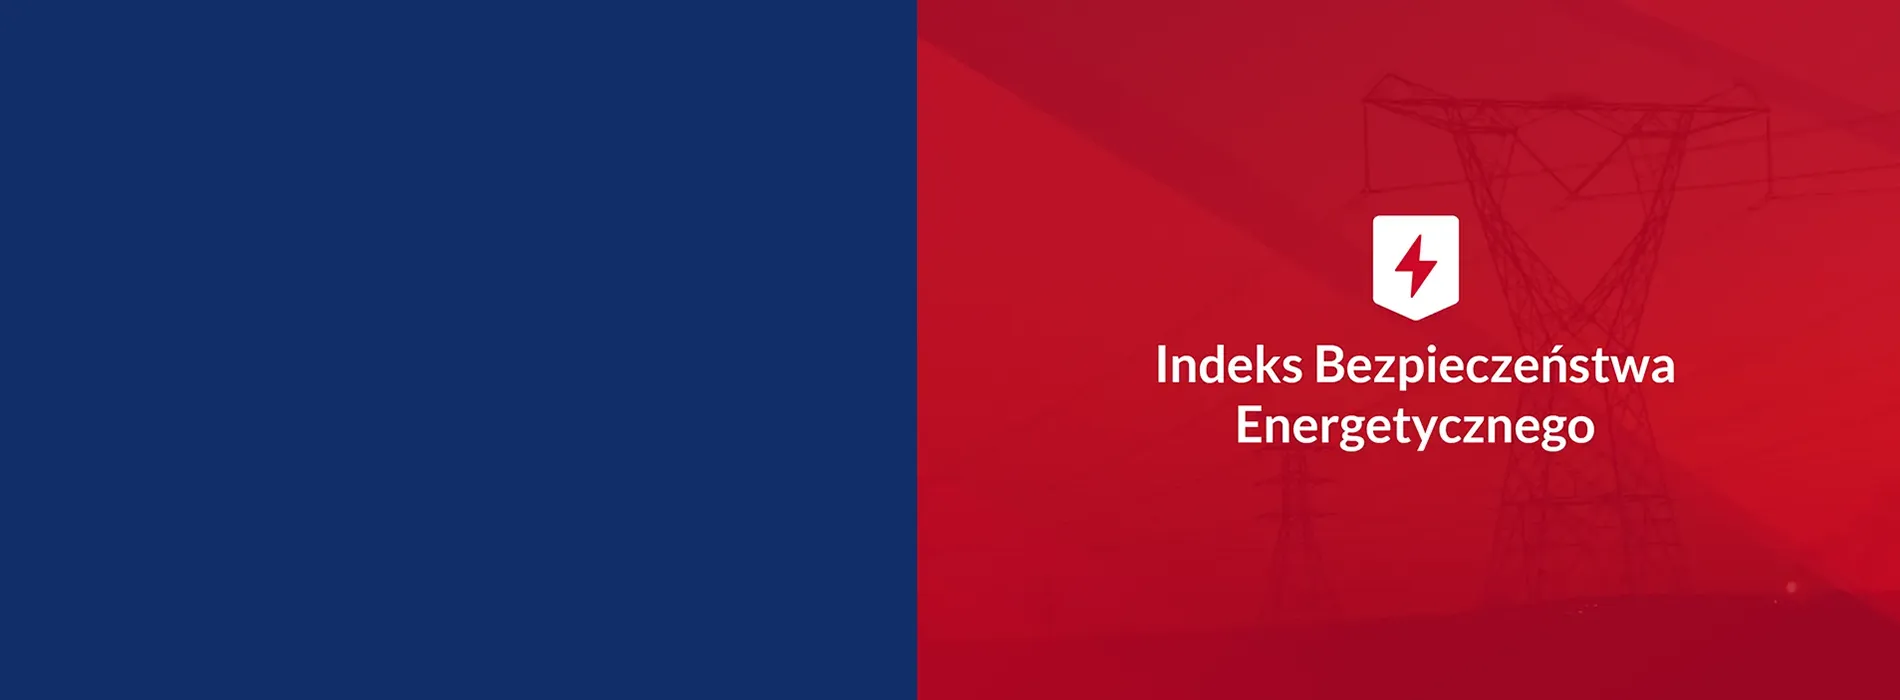 Instytut Jagielloński uruchamia Indeks Bezpieczeństwa Energetycznego